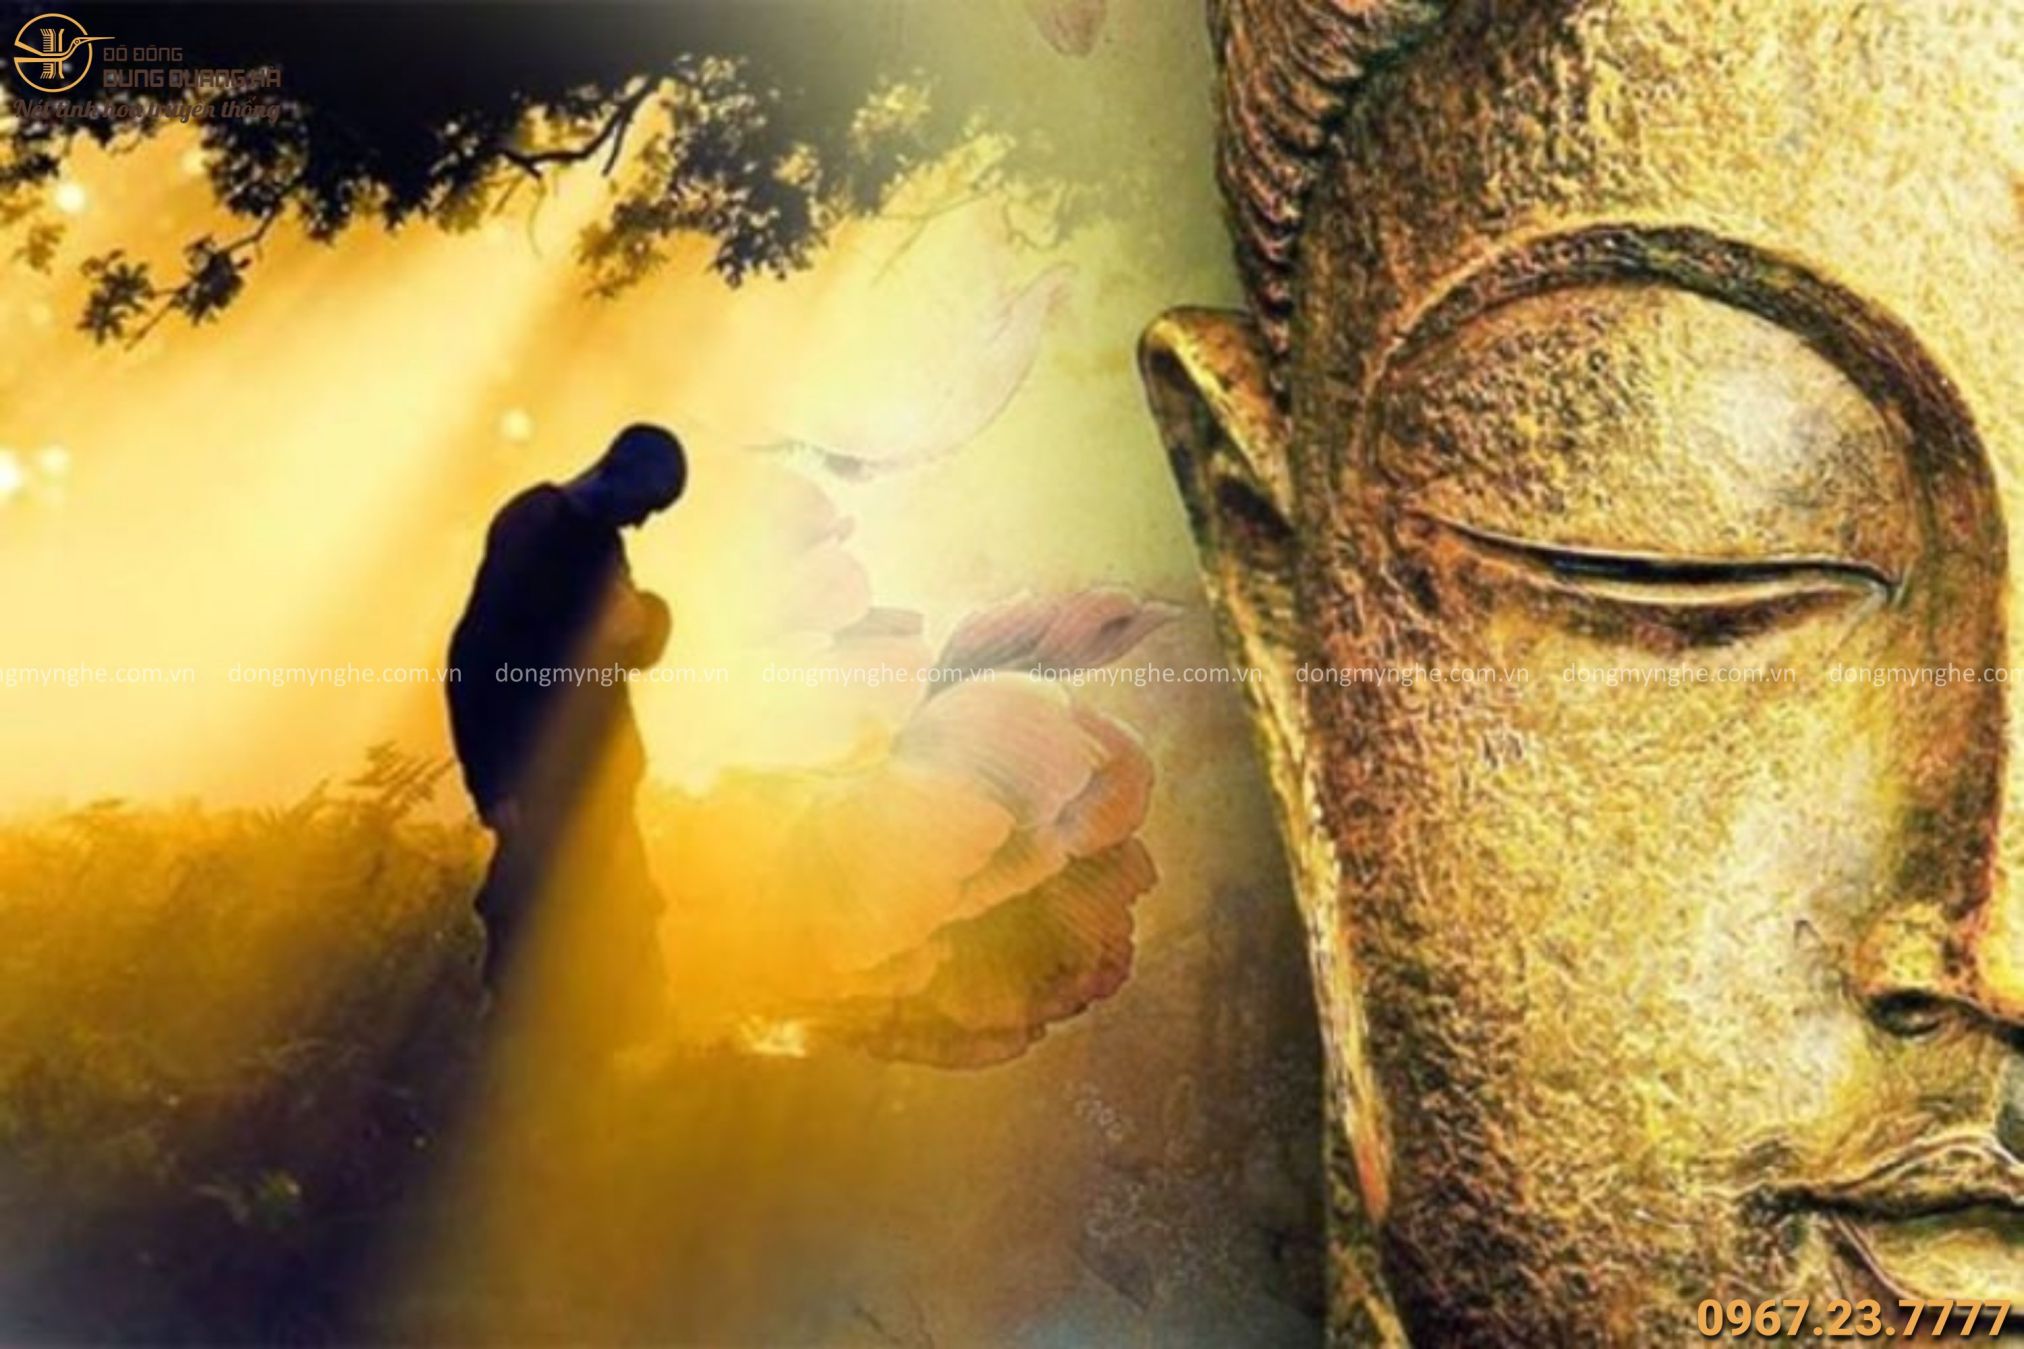 Niệm Phật: Niệm Phật giúp tinh thần ta trở nên xao tâm, giảm stress và mang lại sự bình an trong cuộc sống. Hãy thử tập trung vào niệm Phật để thoát khỏi những suy nghĩ tiêu cực và cảm nhận sự yên tĩnh tràn đầy trong cuộc sống.